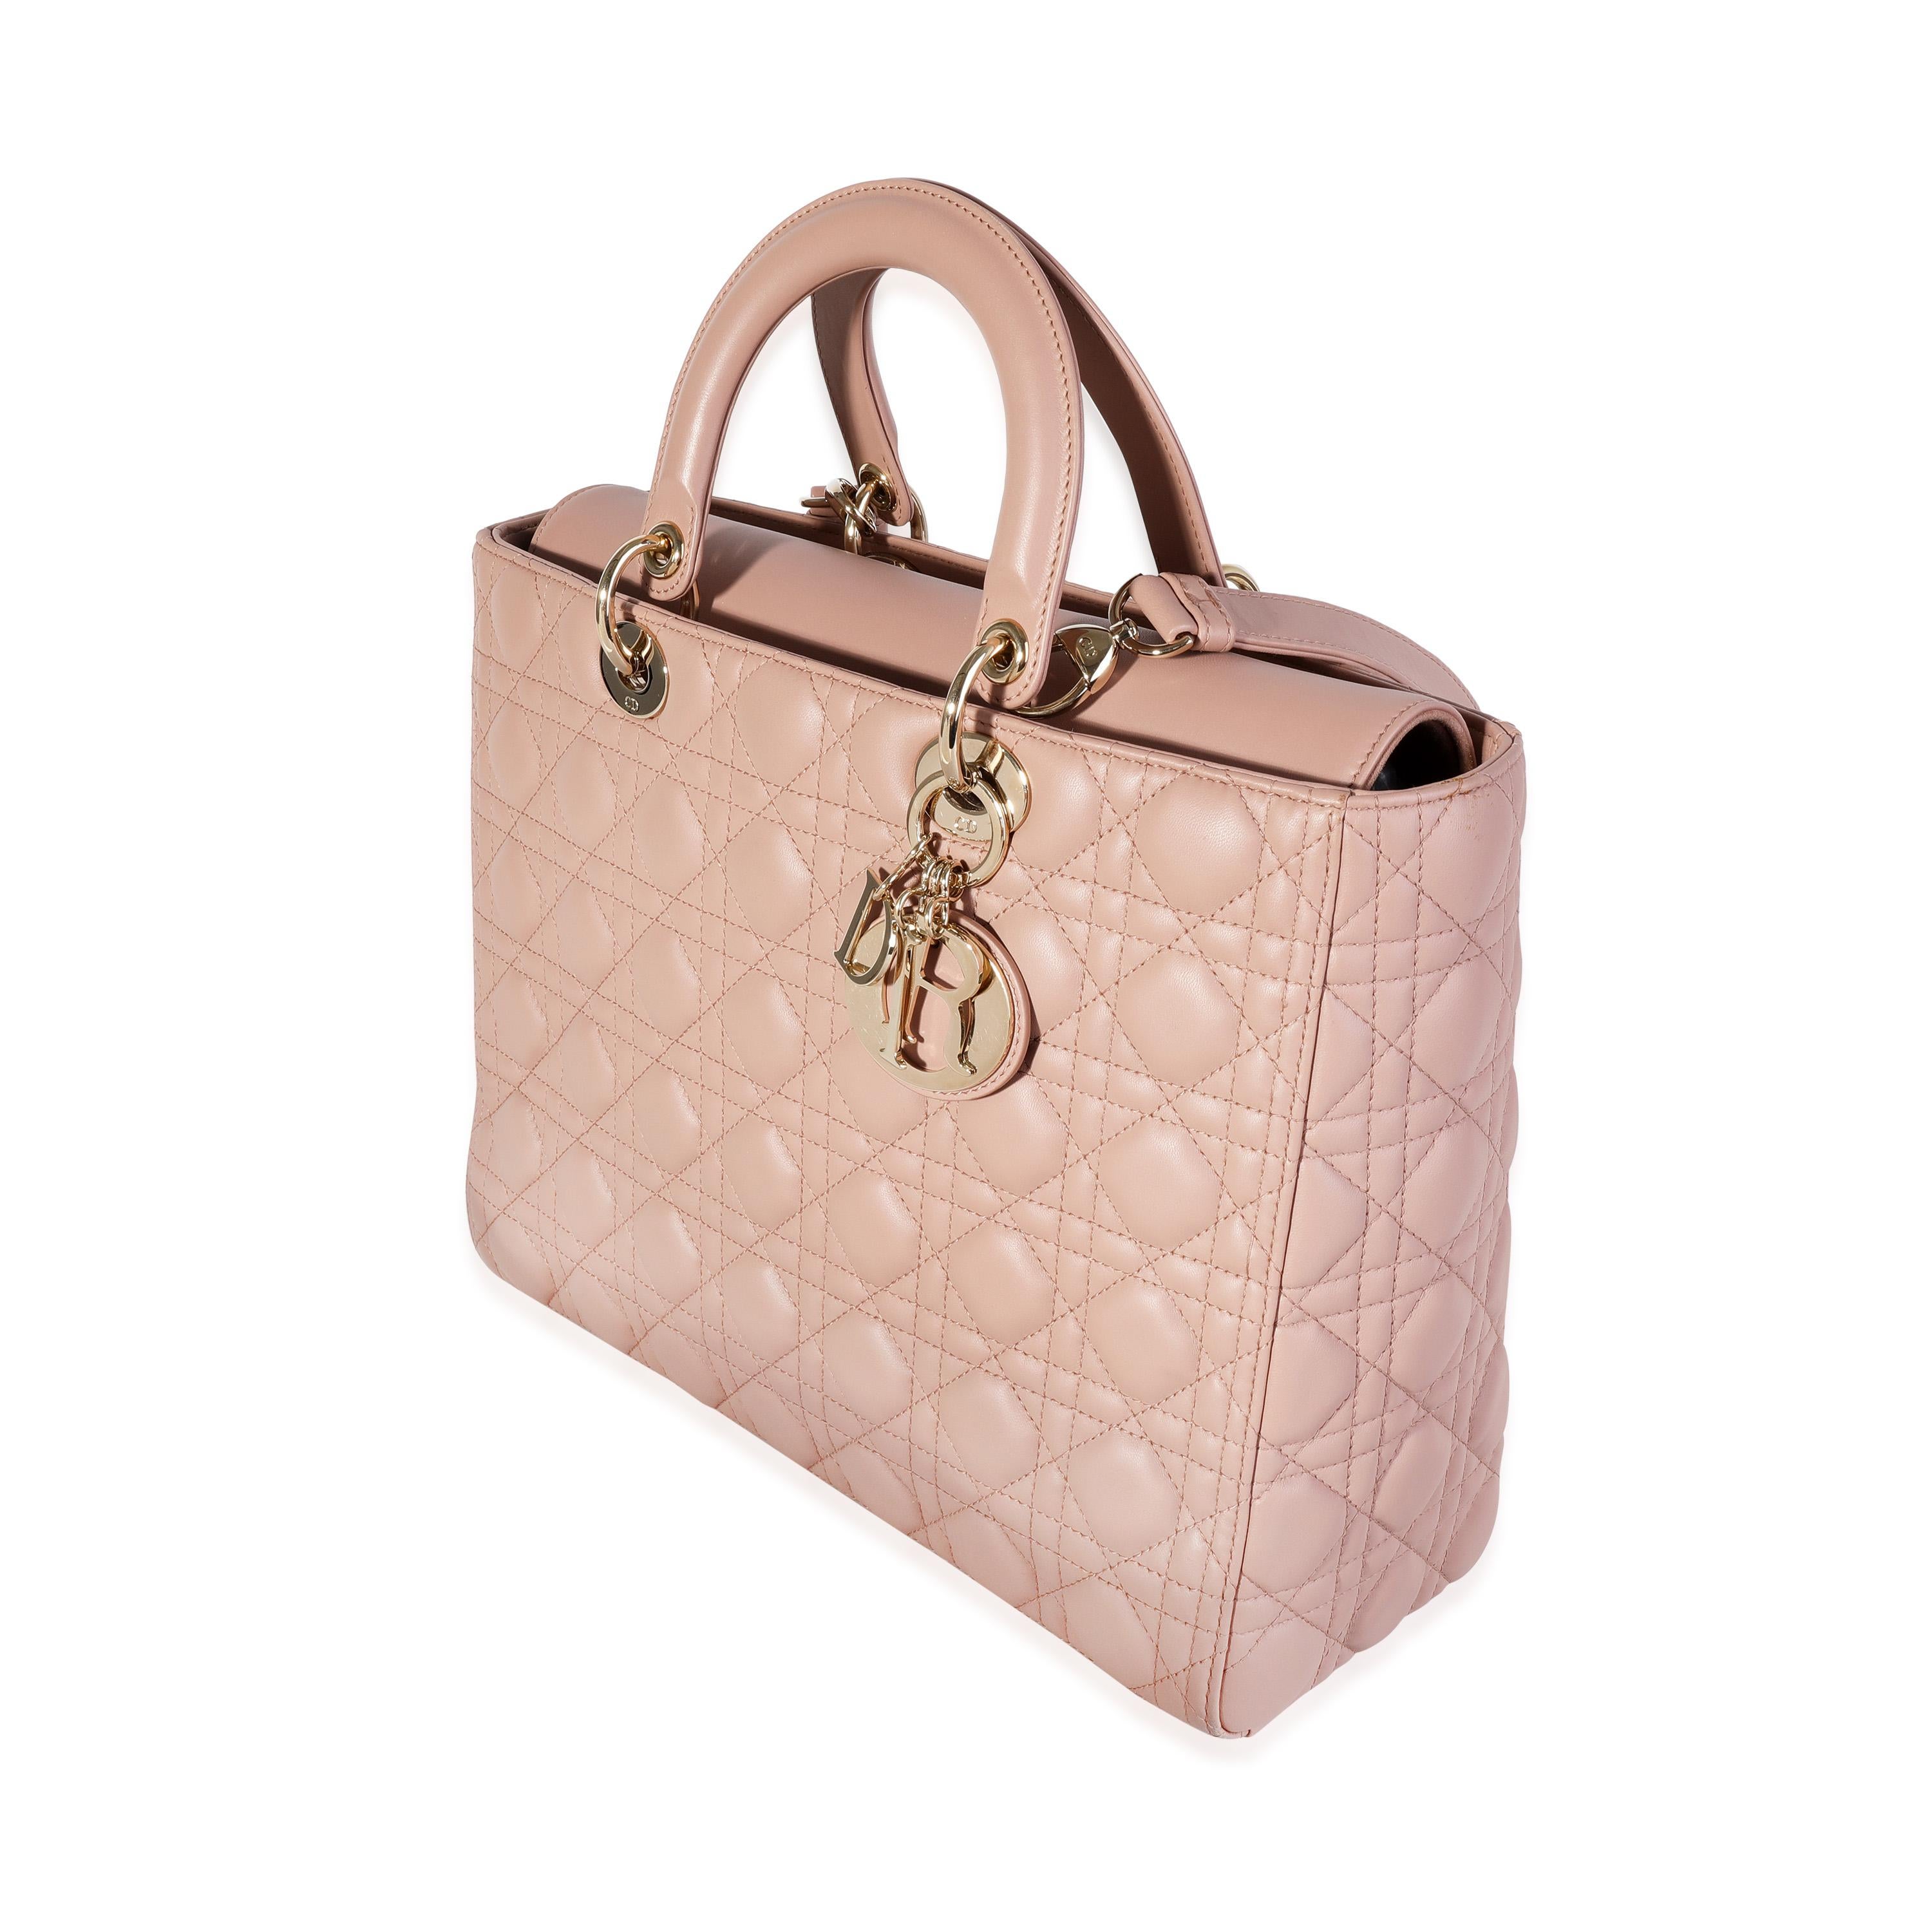 christian dior pink handbag